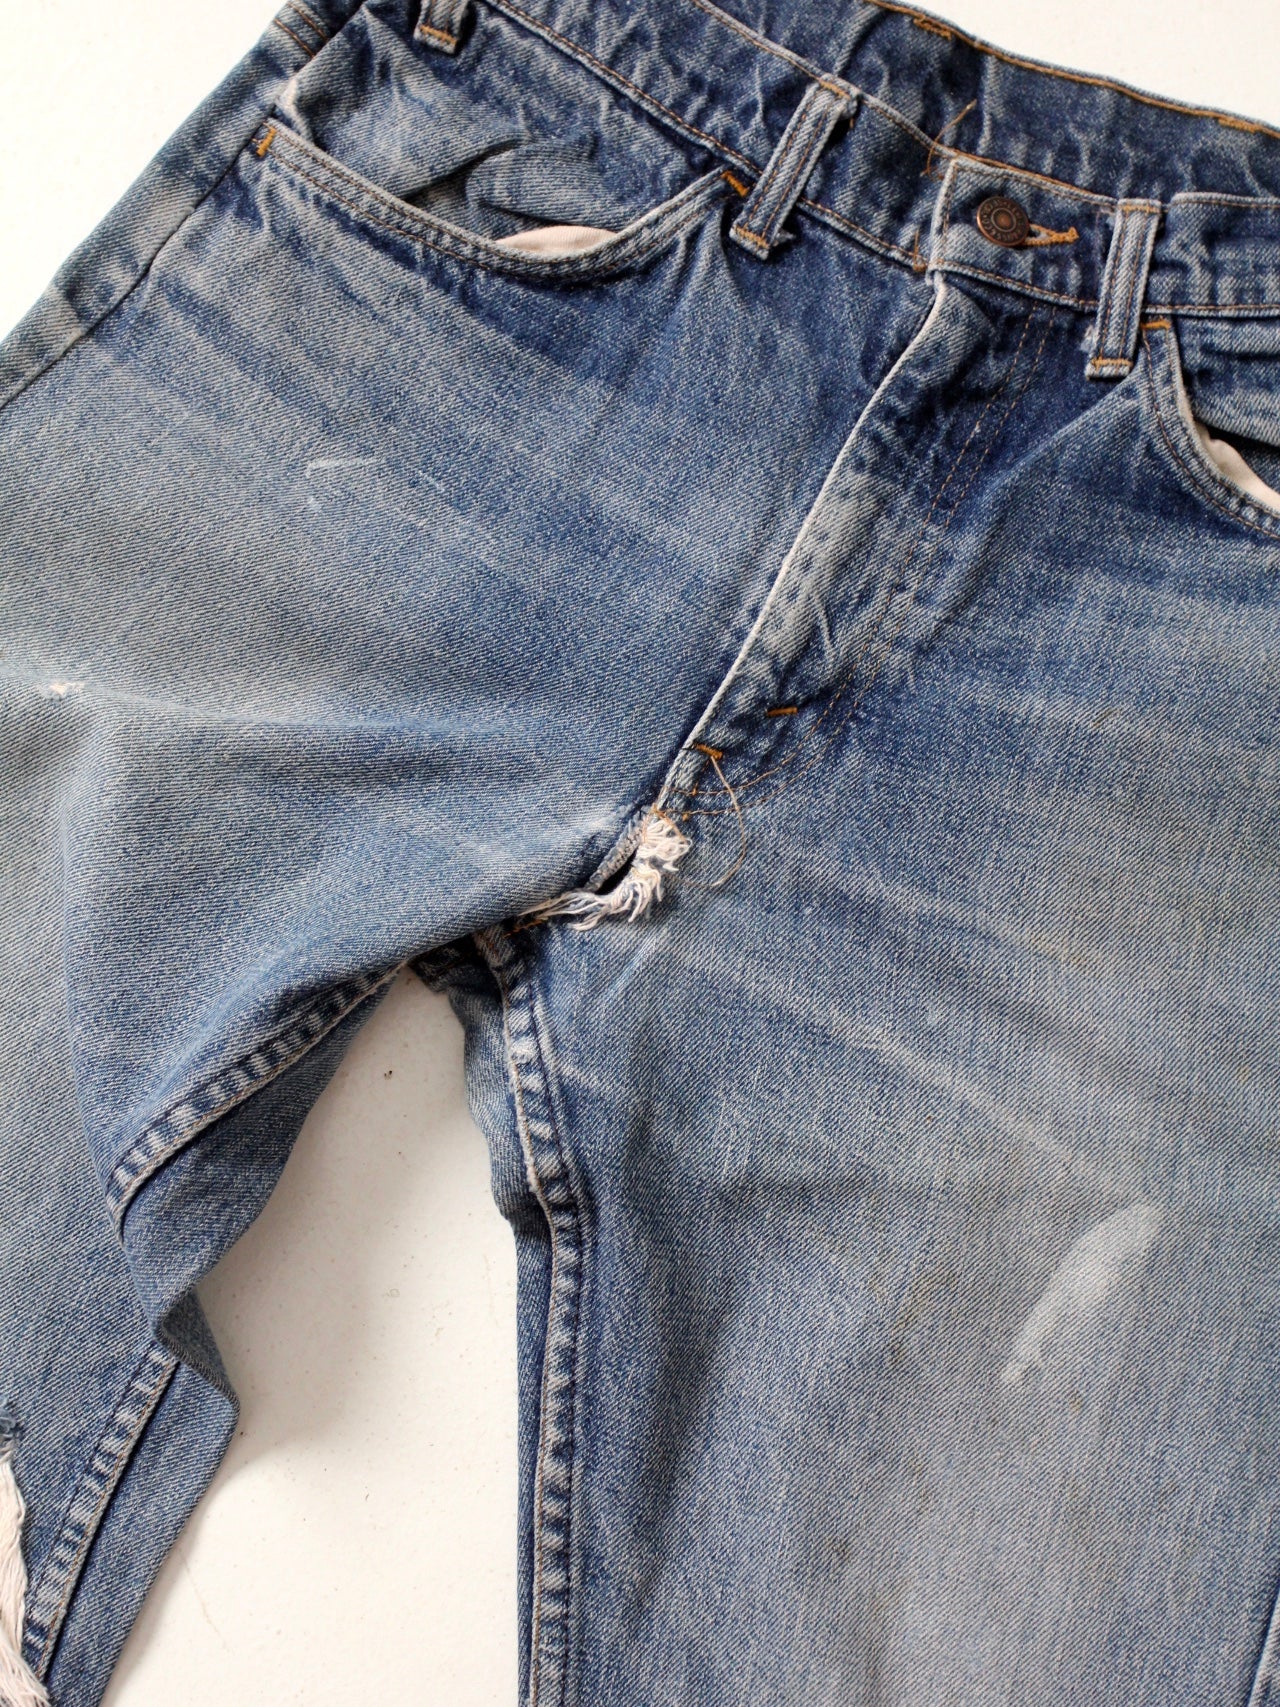 vintage Levis jeans, 31 x 29 – 86 Vintage